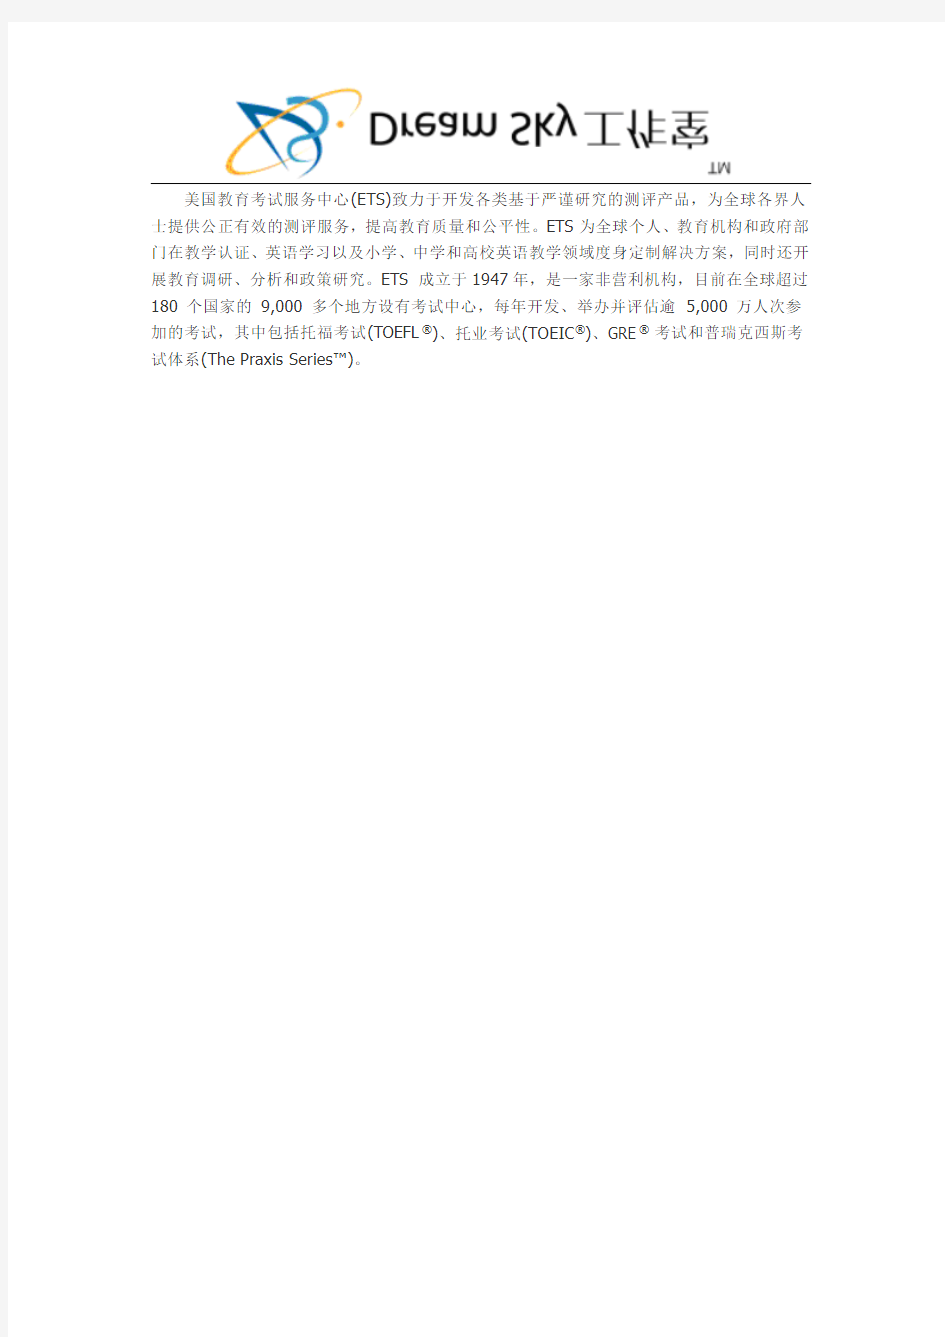 ETS：新《托福考试官方指南》简体中文强化版发布